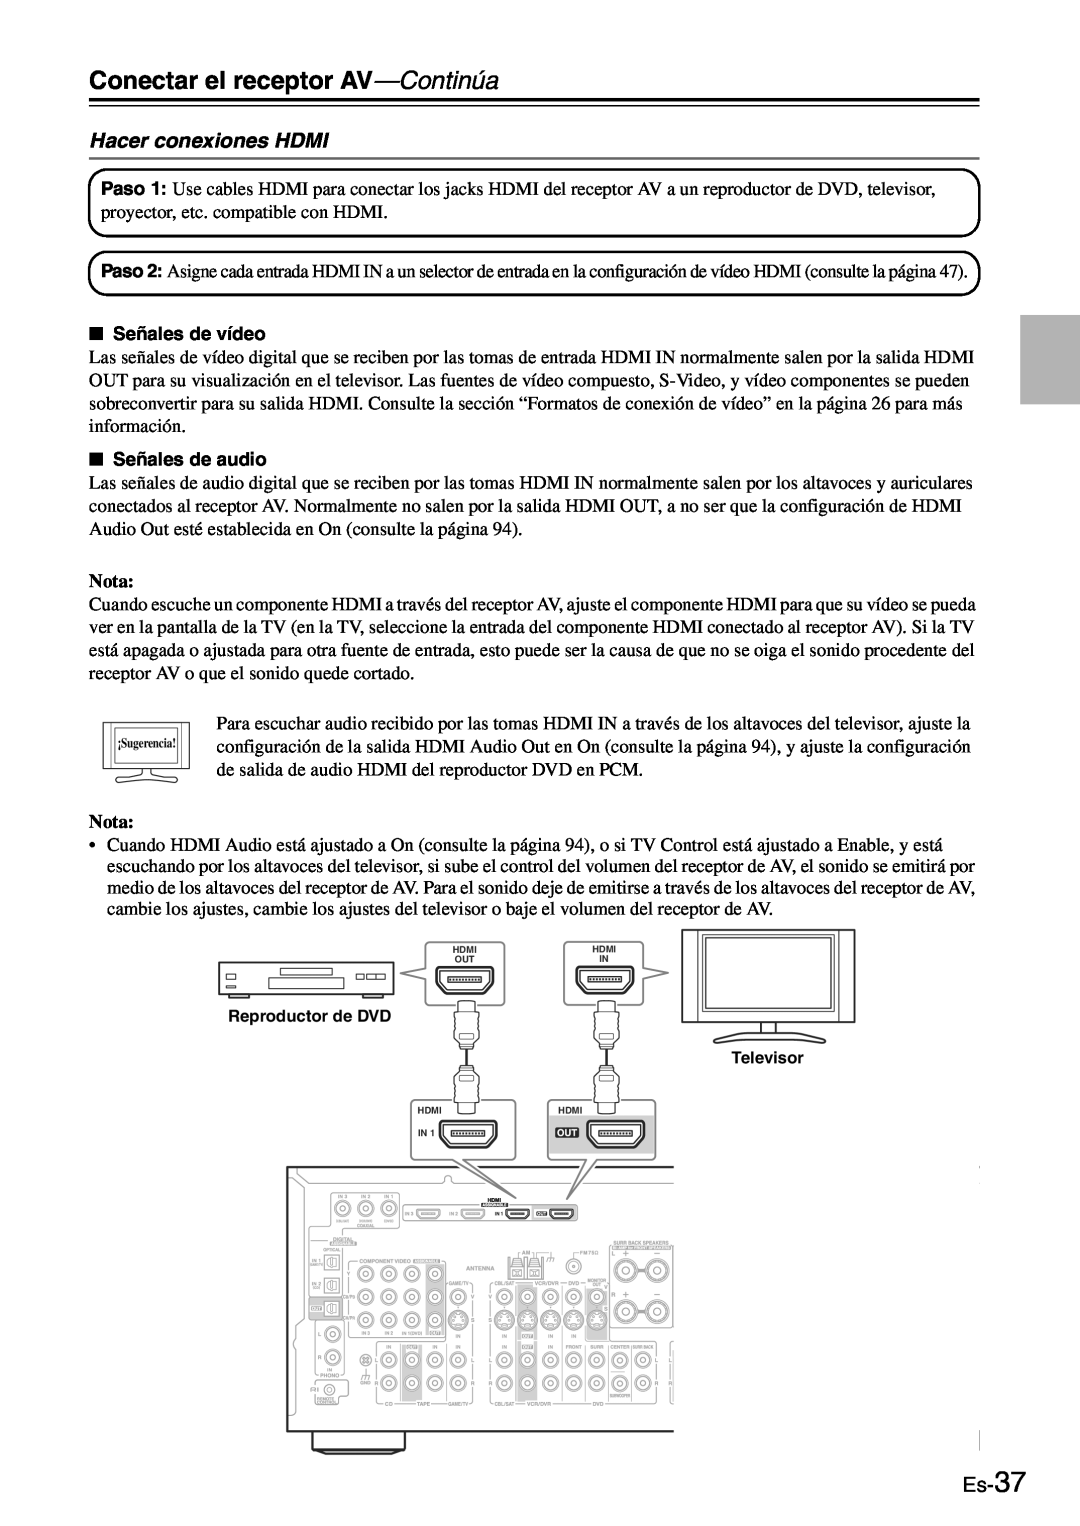 Onkyo TX-SR705 manual Hacer conexiones HDMI, Es-37, Conectar el receptor AV—Continúa, Nota 